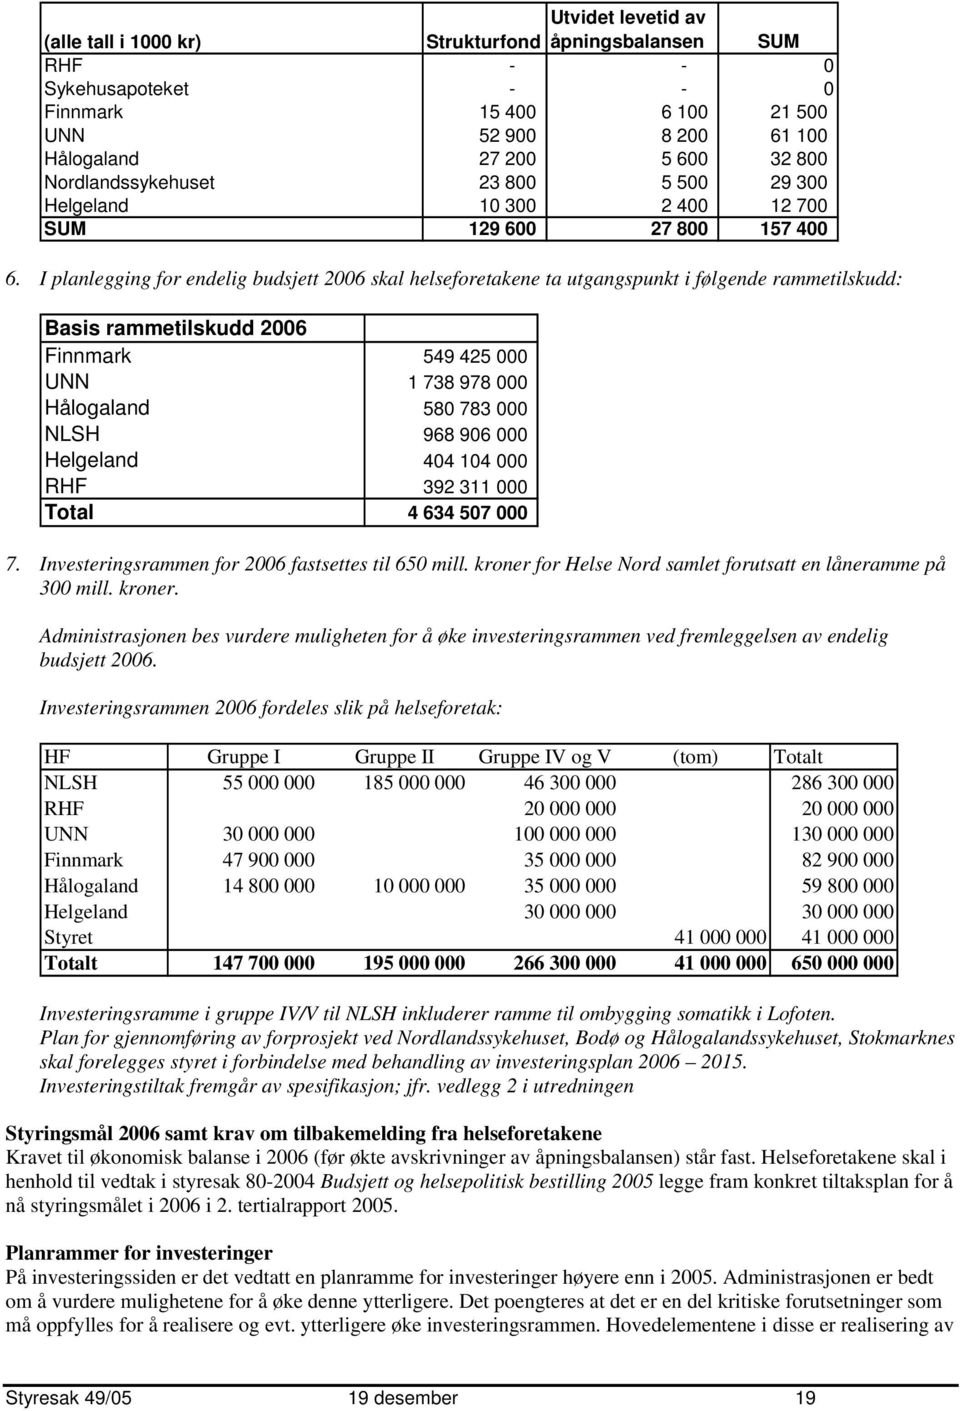 I planlegging for endelig budsjett 2006 skal helseforetakene ta utgangspunkt i følgende rammetilskudd: Basis rammetilskudd 2006 Finnmark 549 425 000 UNN 1 738 978 000 Hålogaland 580 783 000 NLSH 968